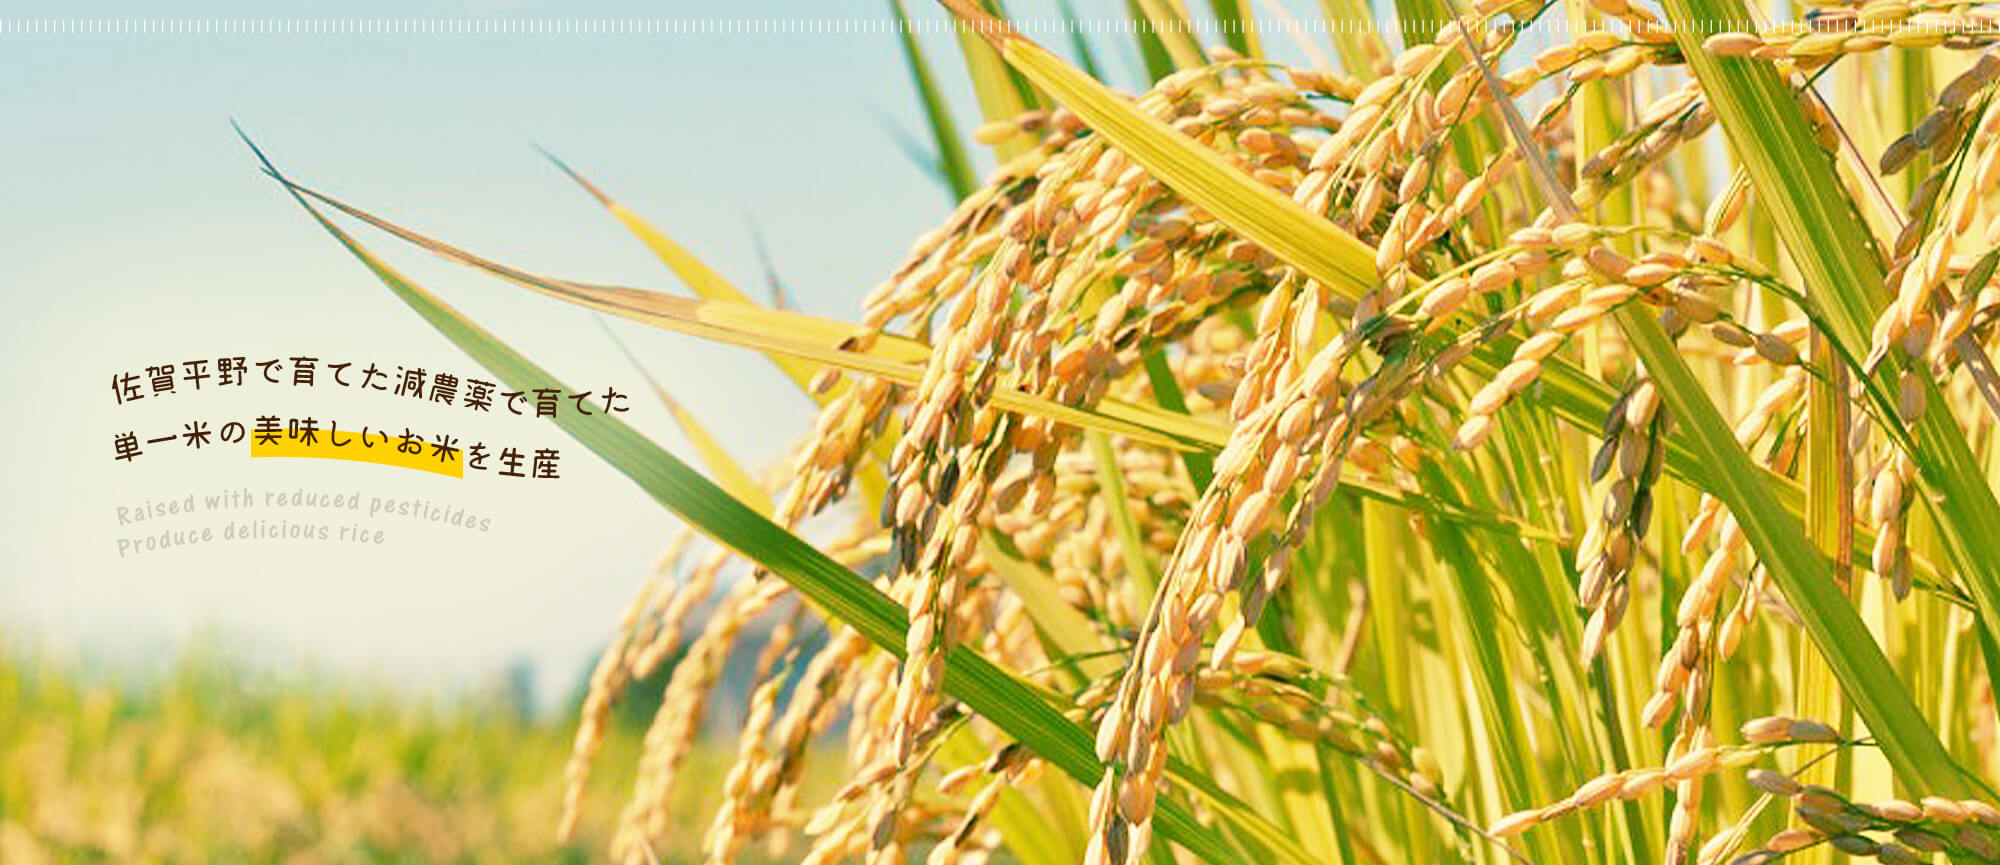 佐賀平野で育てた減農薬で育てた単一米の美味しいお米を生産